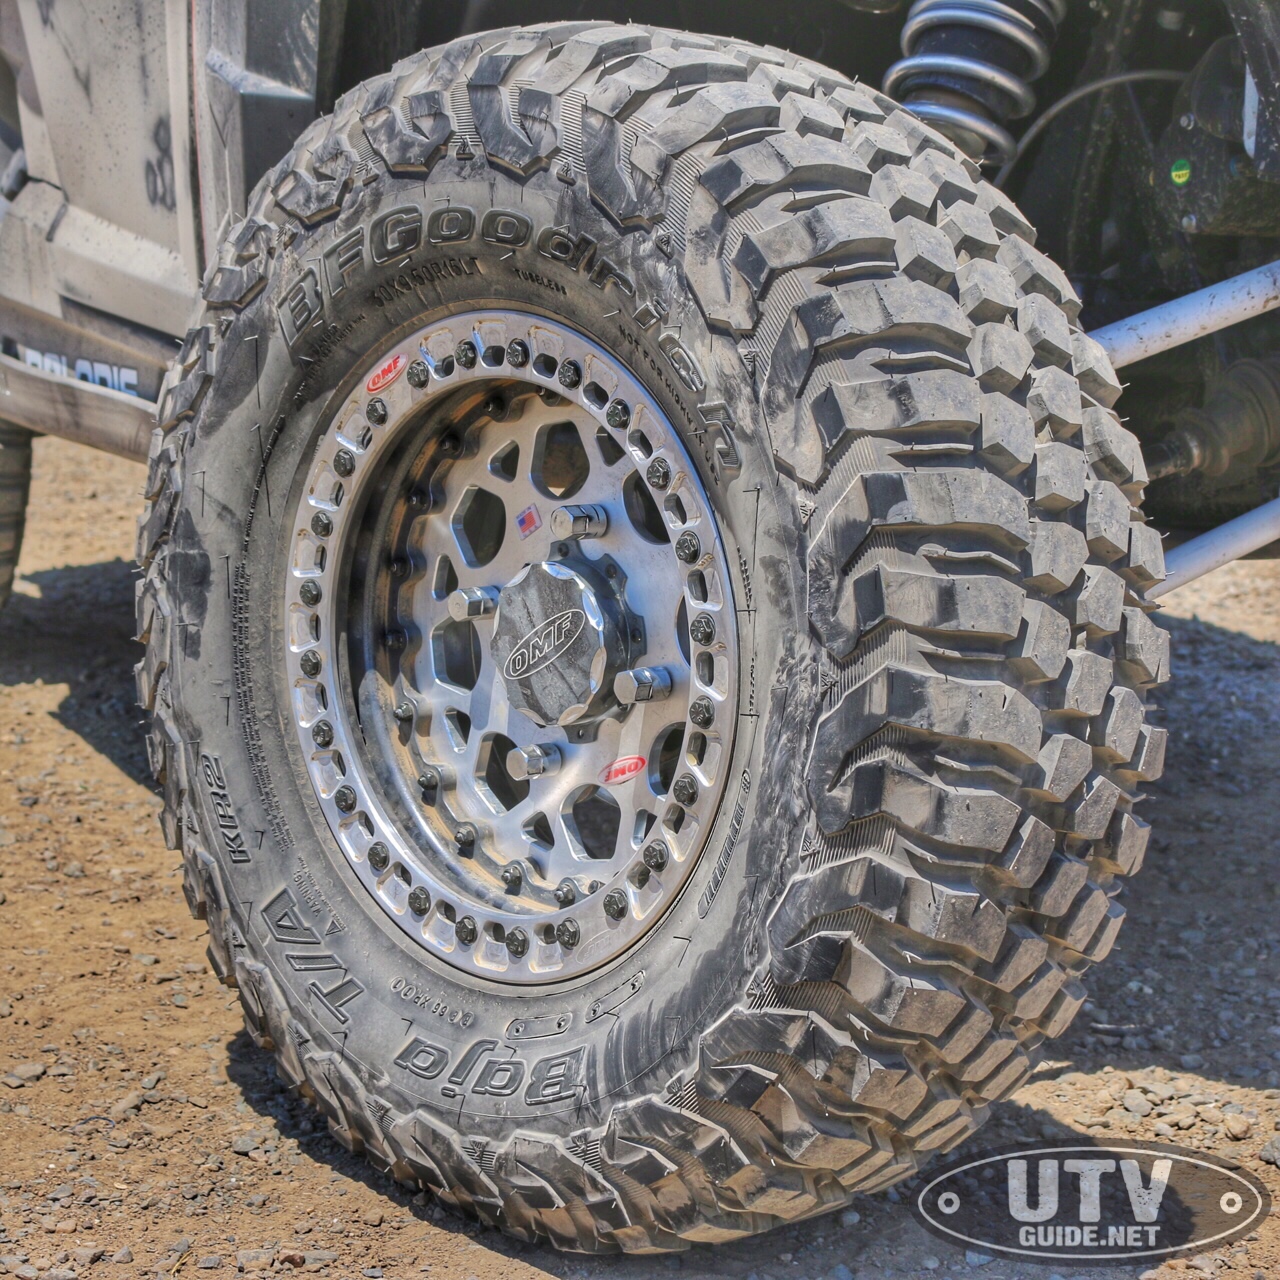 BFGoodrich Baja T/A KR2 UTV Tire - UTV Guide